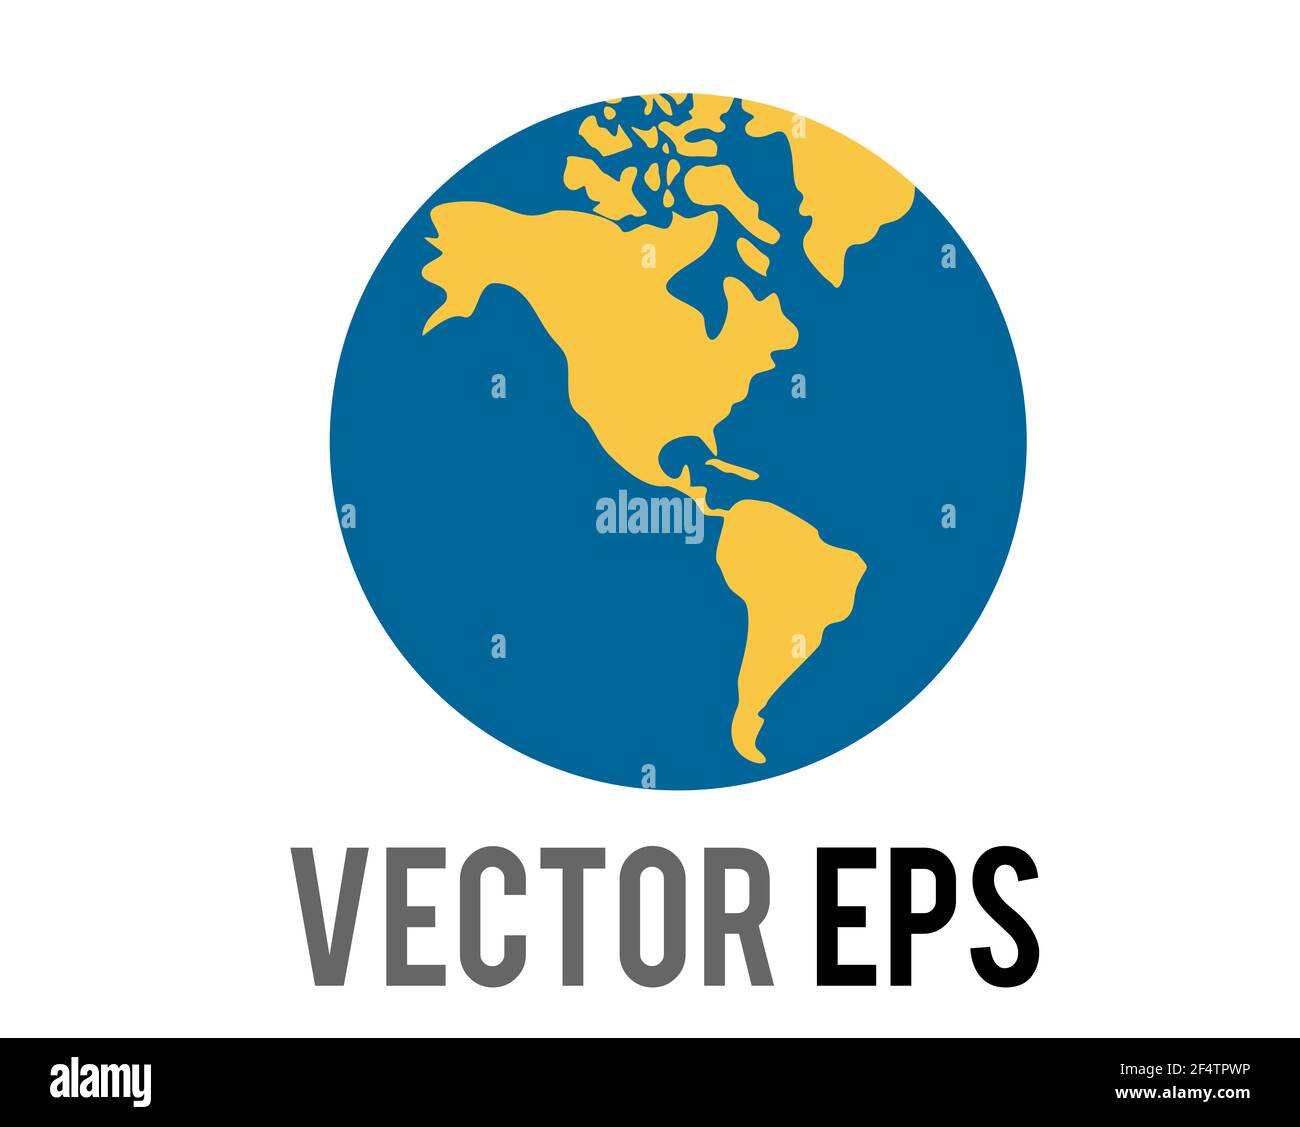 Le globe vectoriel montrant l'icône Amériques, montrant l'Amérique du Nord, l'Amérique du Sud en vert contre l'océan bleu, représente le contenu concernant l'Amérique du Nord et l'Amérique du Sud Banque D'Images